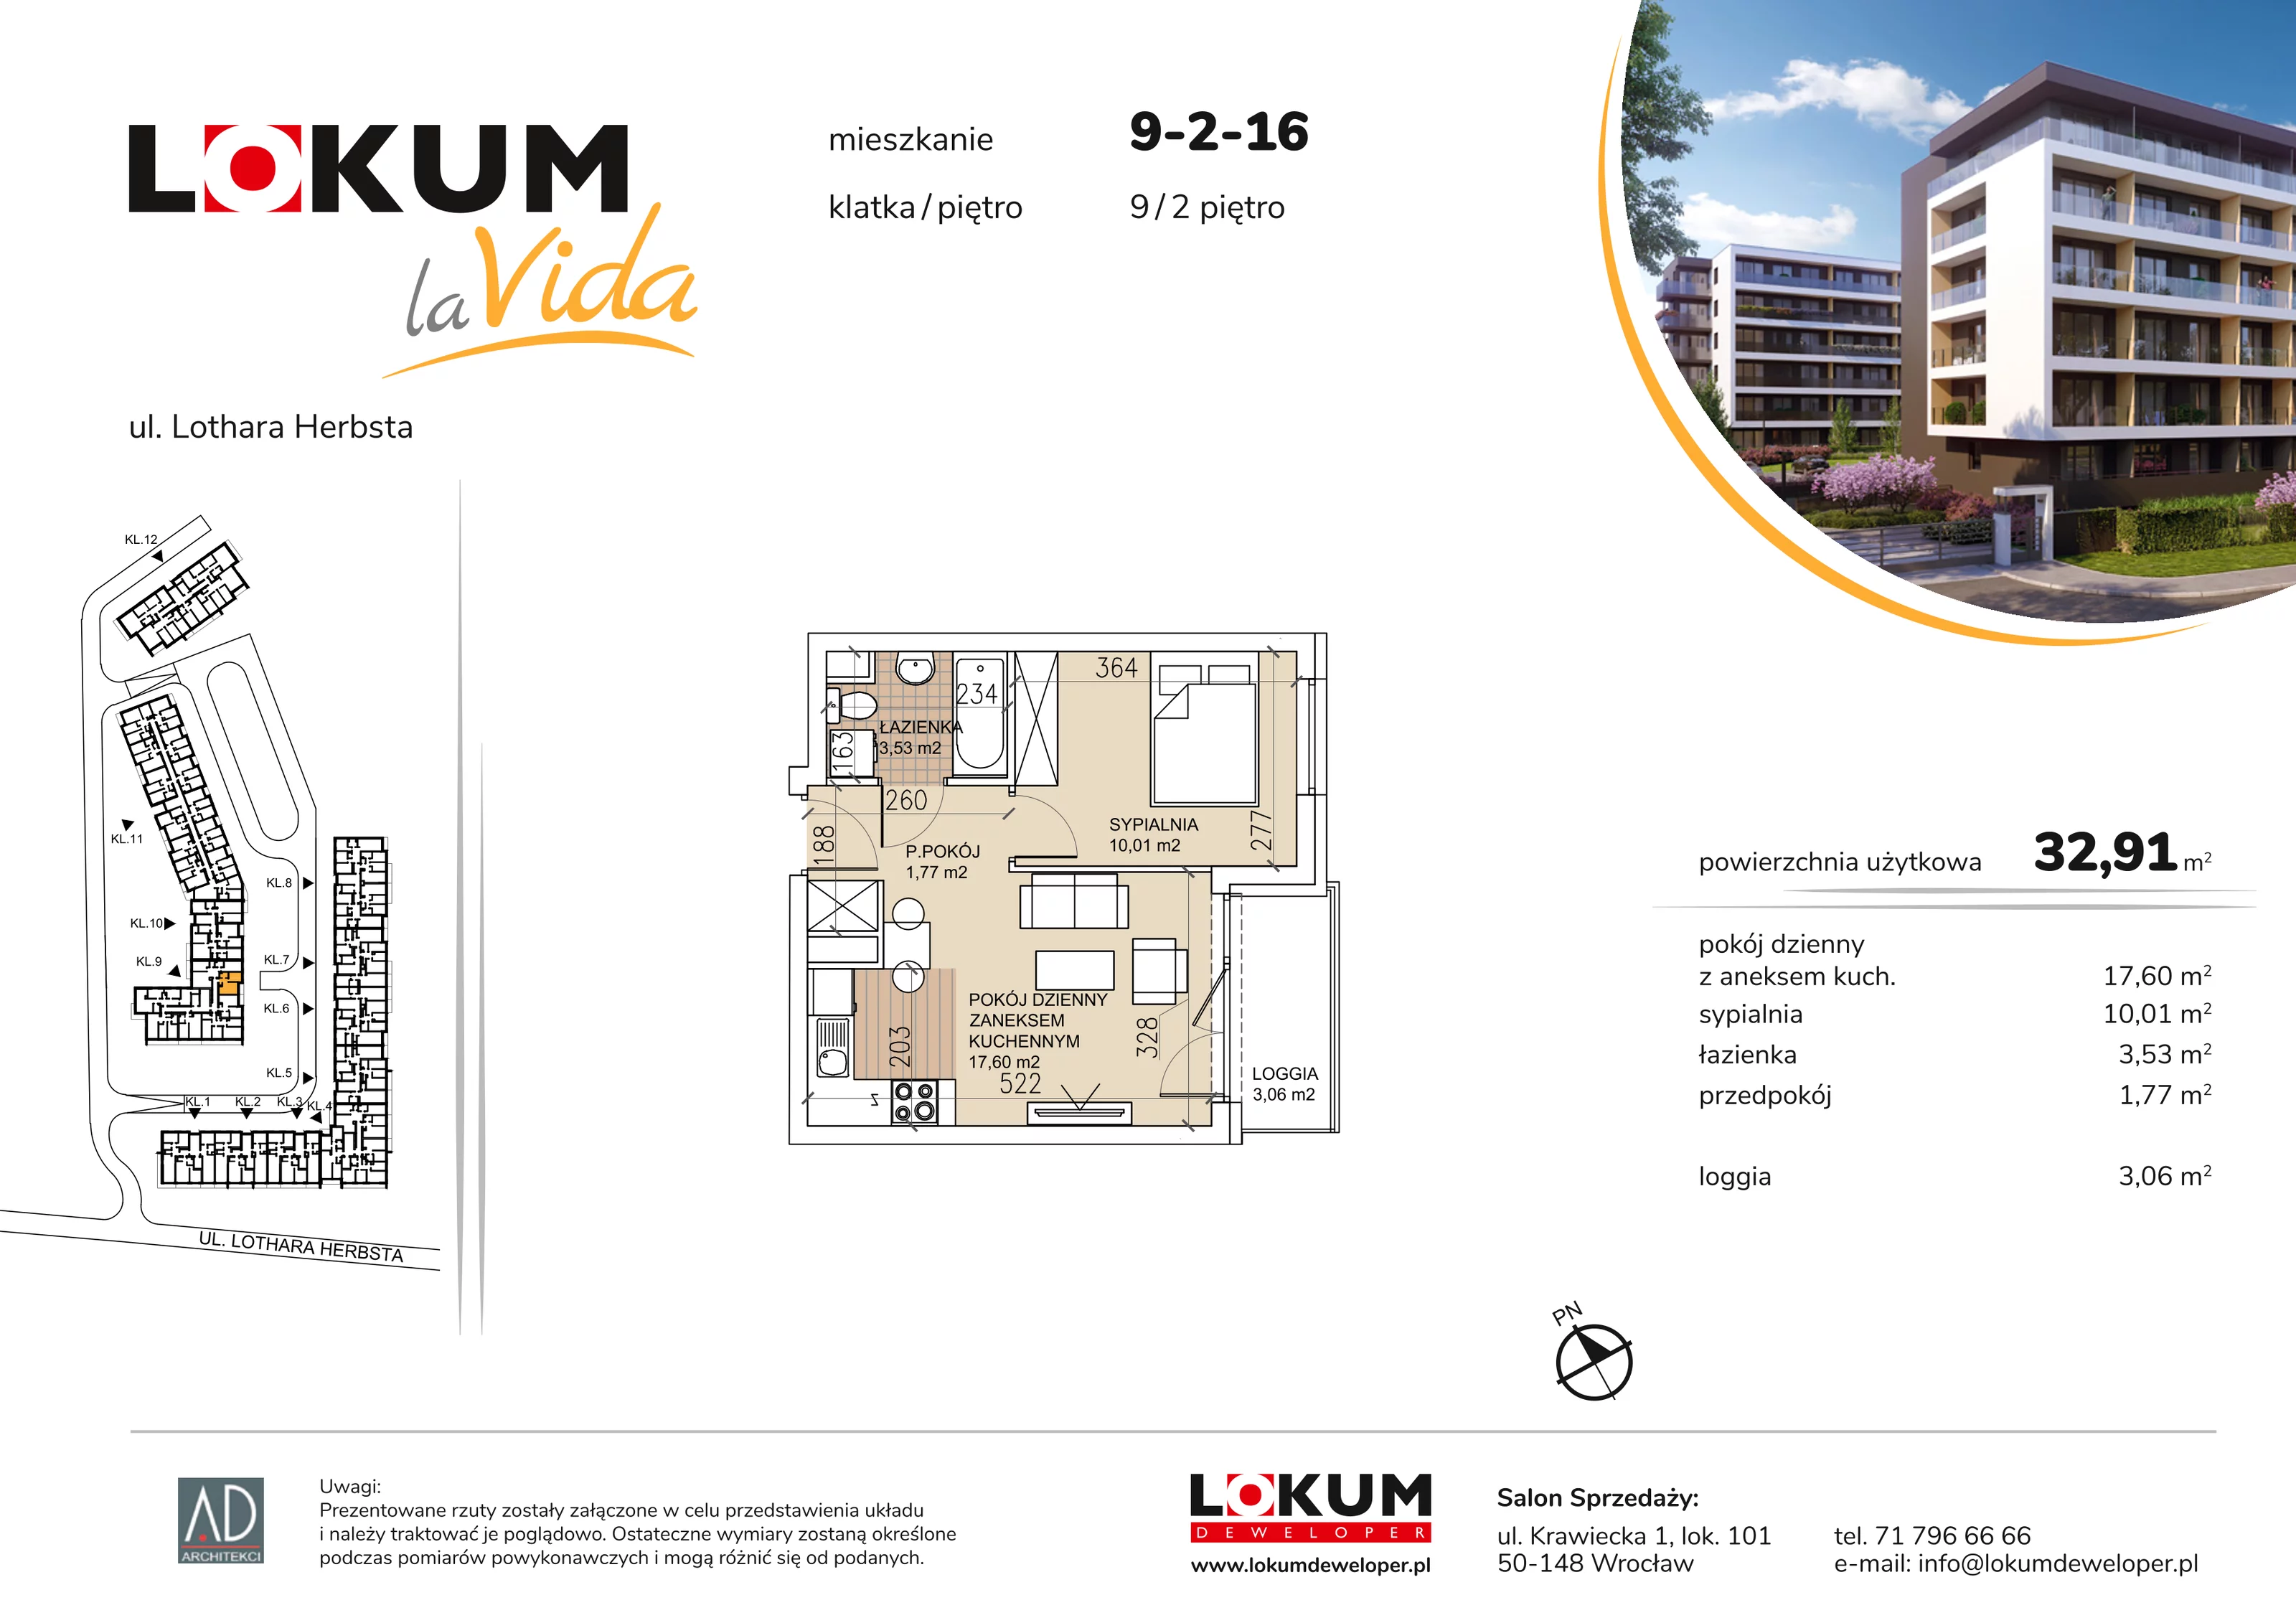 Mieszkanie 32,91 m², piętro 2, oferta nr 9-2-16, Lokum la Vida, Wrocław, Sołtysowice, ul. Lothara Herbsta